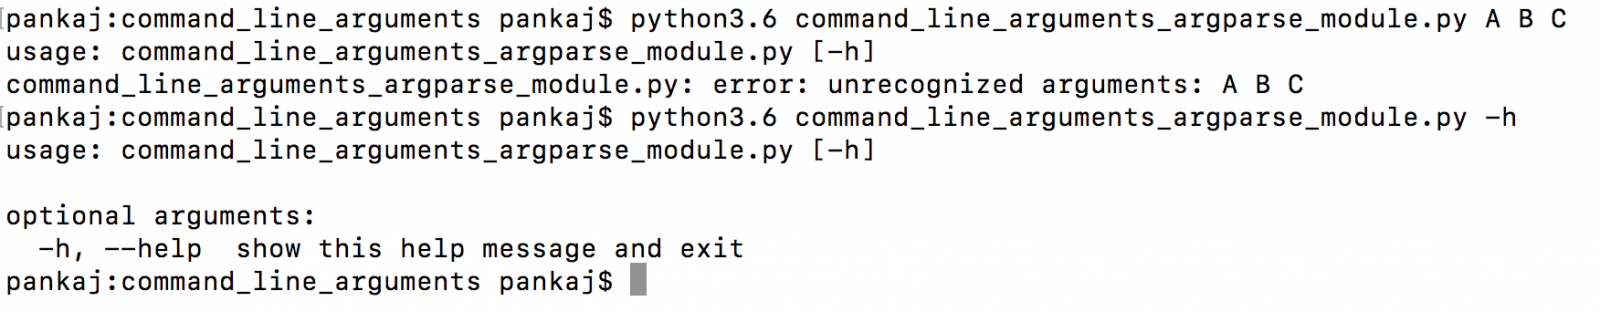 python command line arguments using argparse module